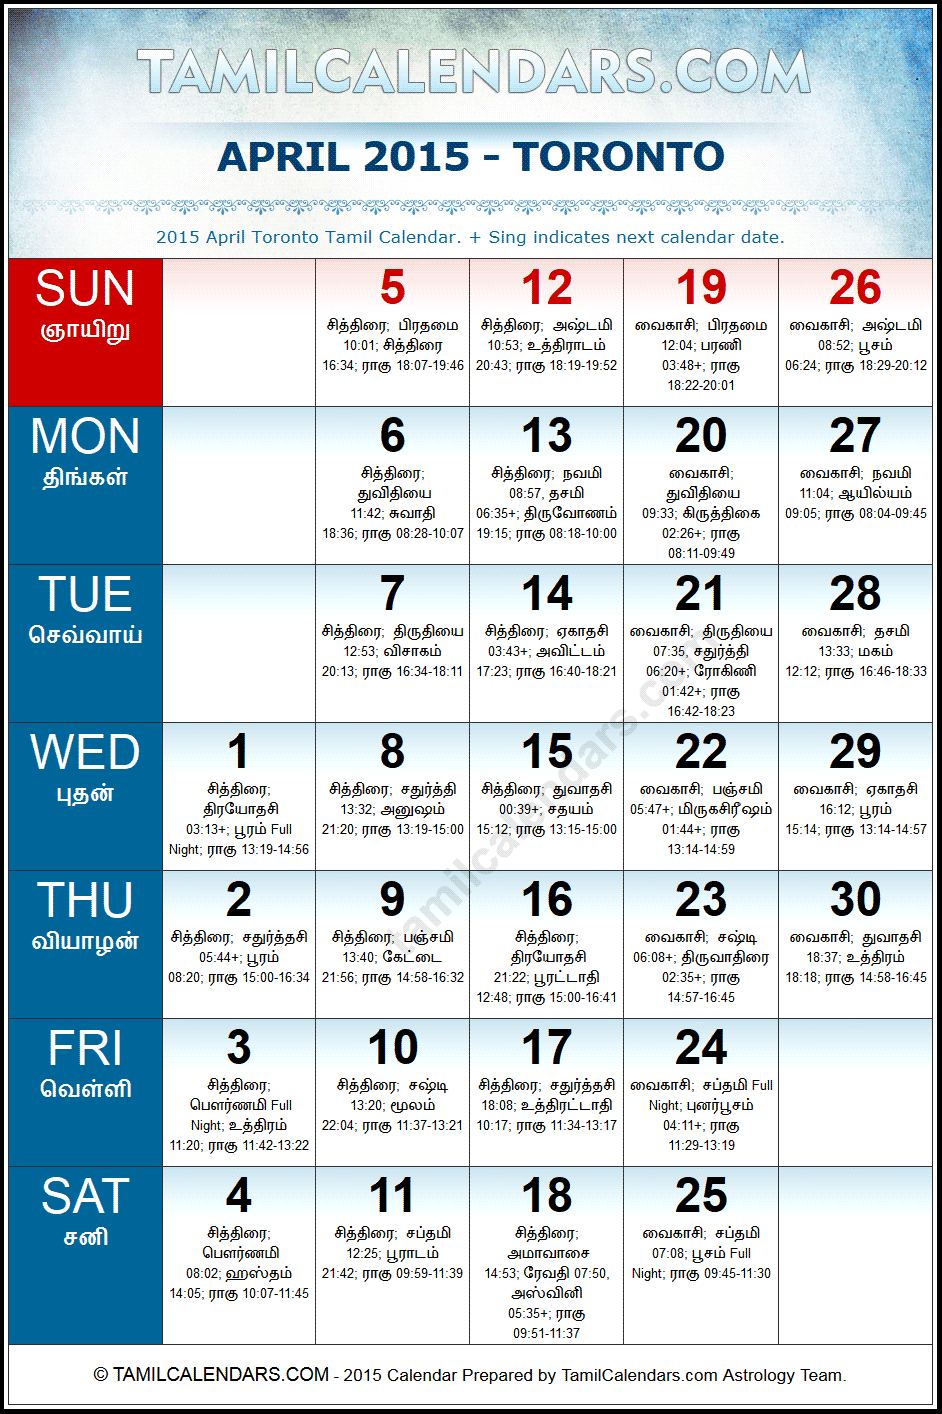 April 2015 Tamil Calendar for Toronto, Canada